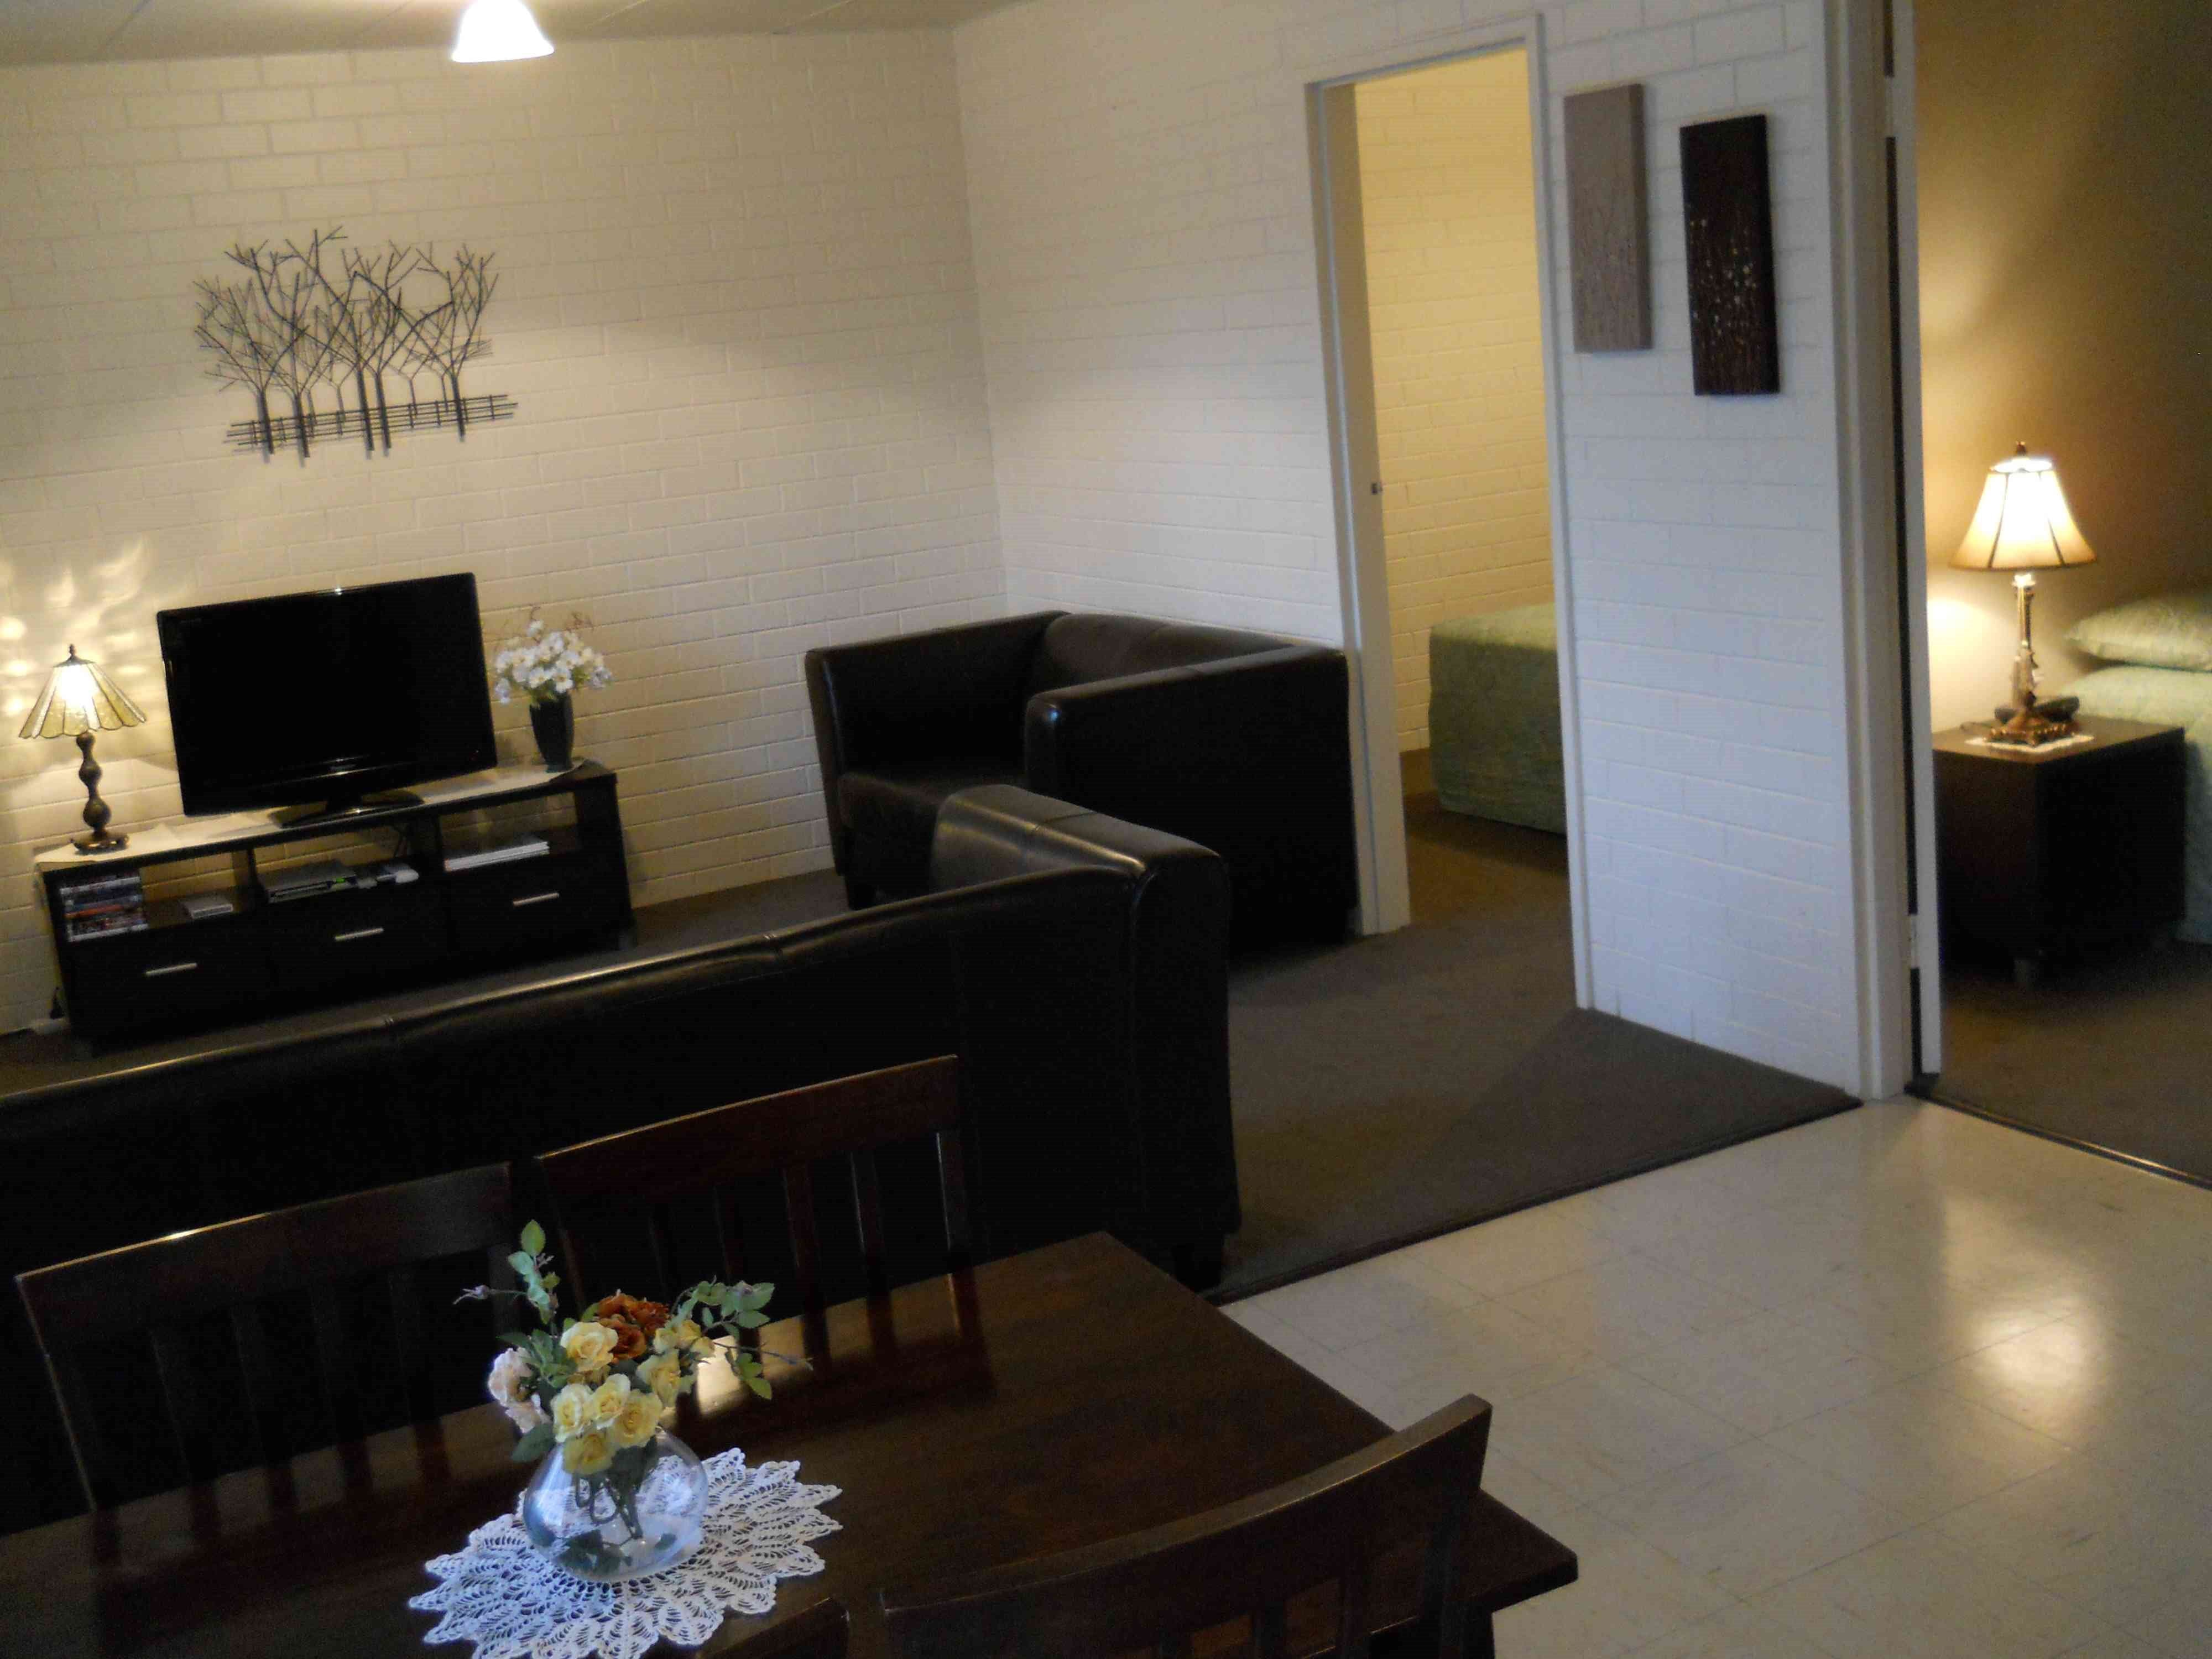 BJs Short Stay Apartments - Accommodation in Bendigo